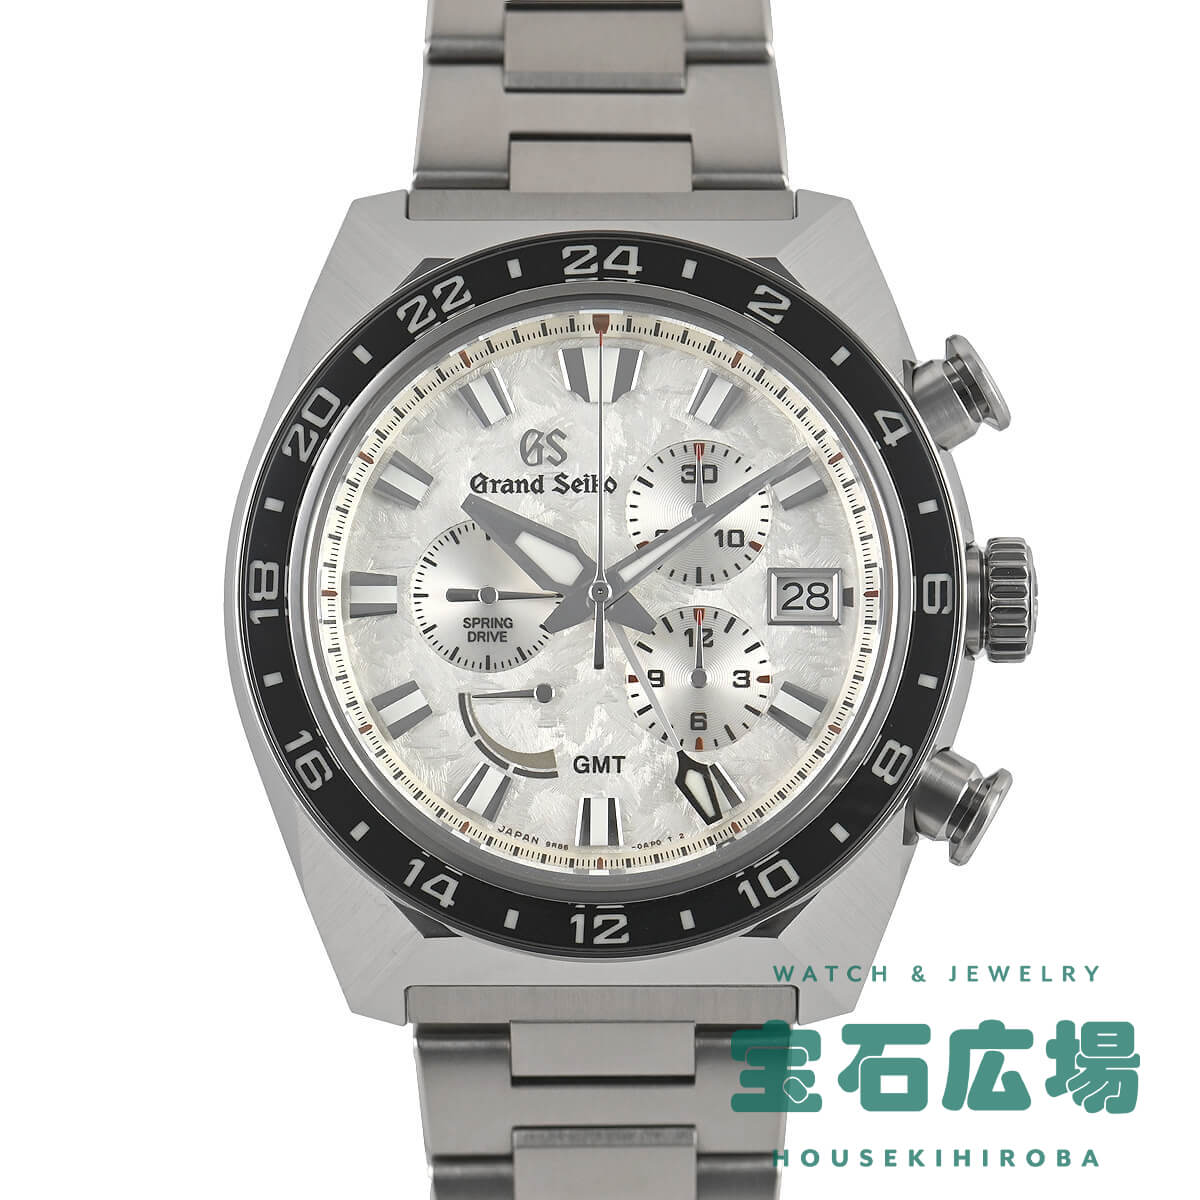 グランドセイコー Grand Seiko スポーツコレクション スプリングドライブ クロノグラフGMT SBGC253 9R86-0AN0 中古 未使用品 メンズ 腕時計